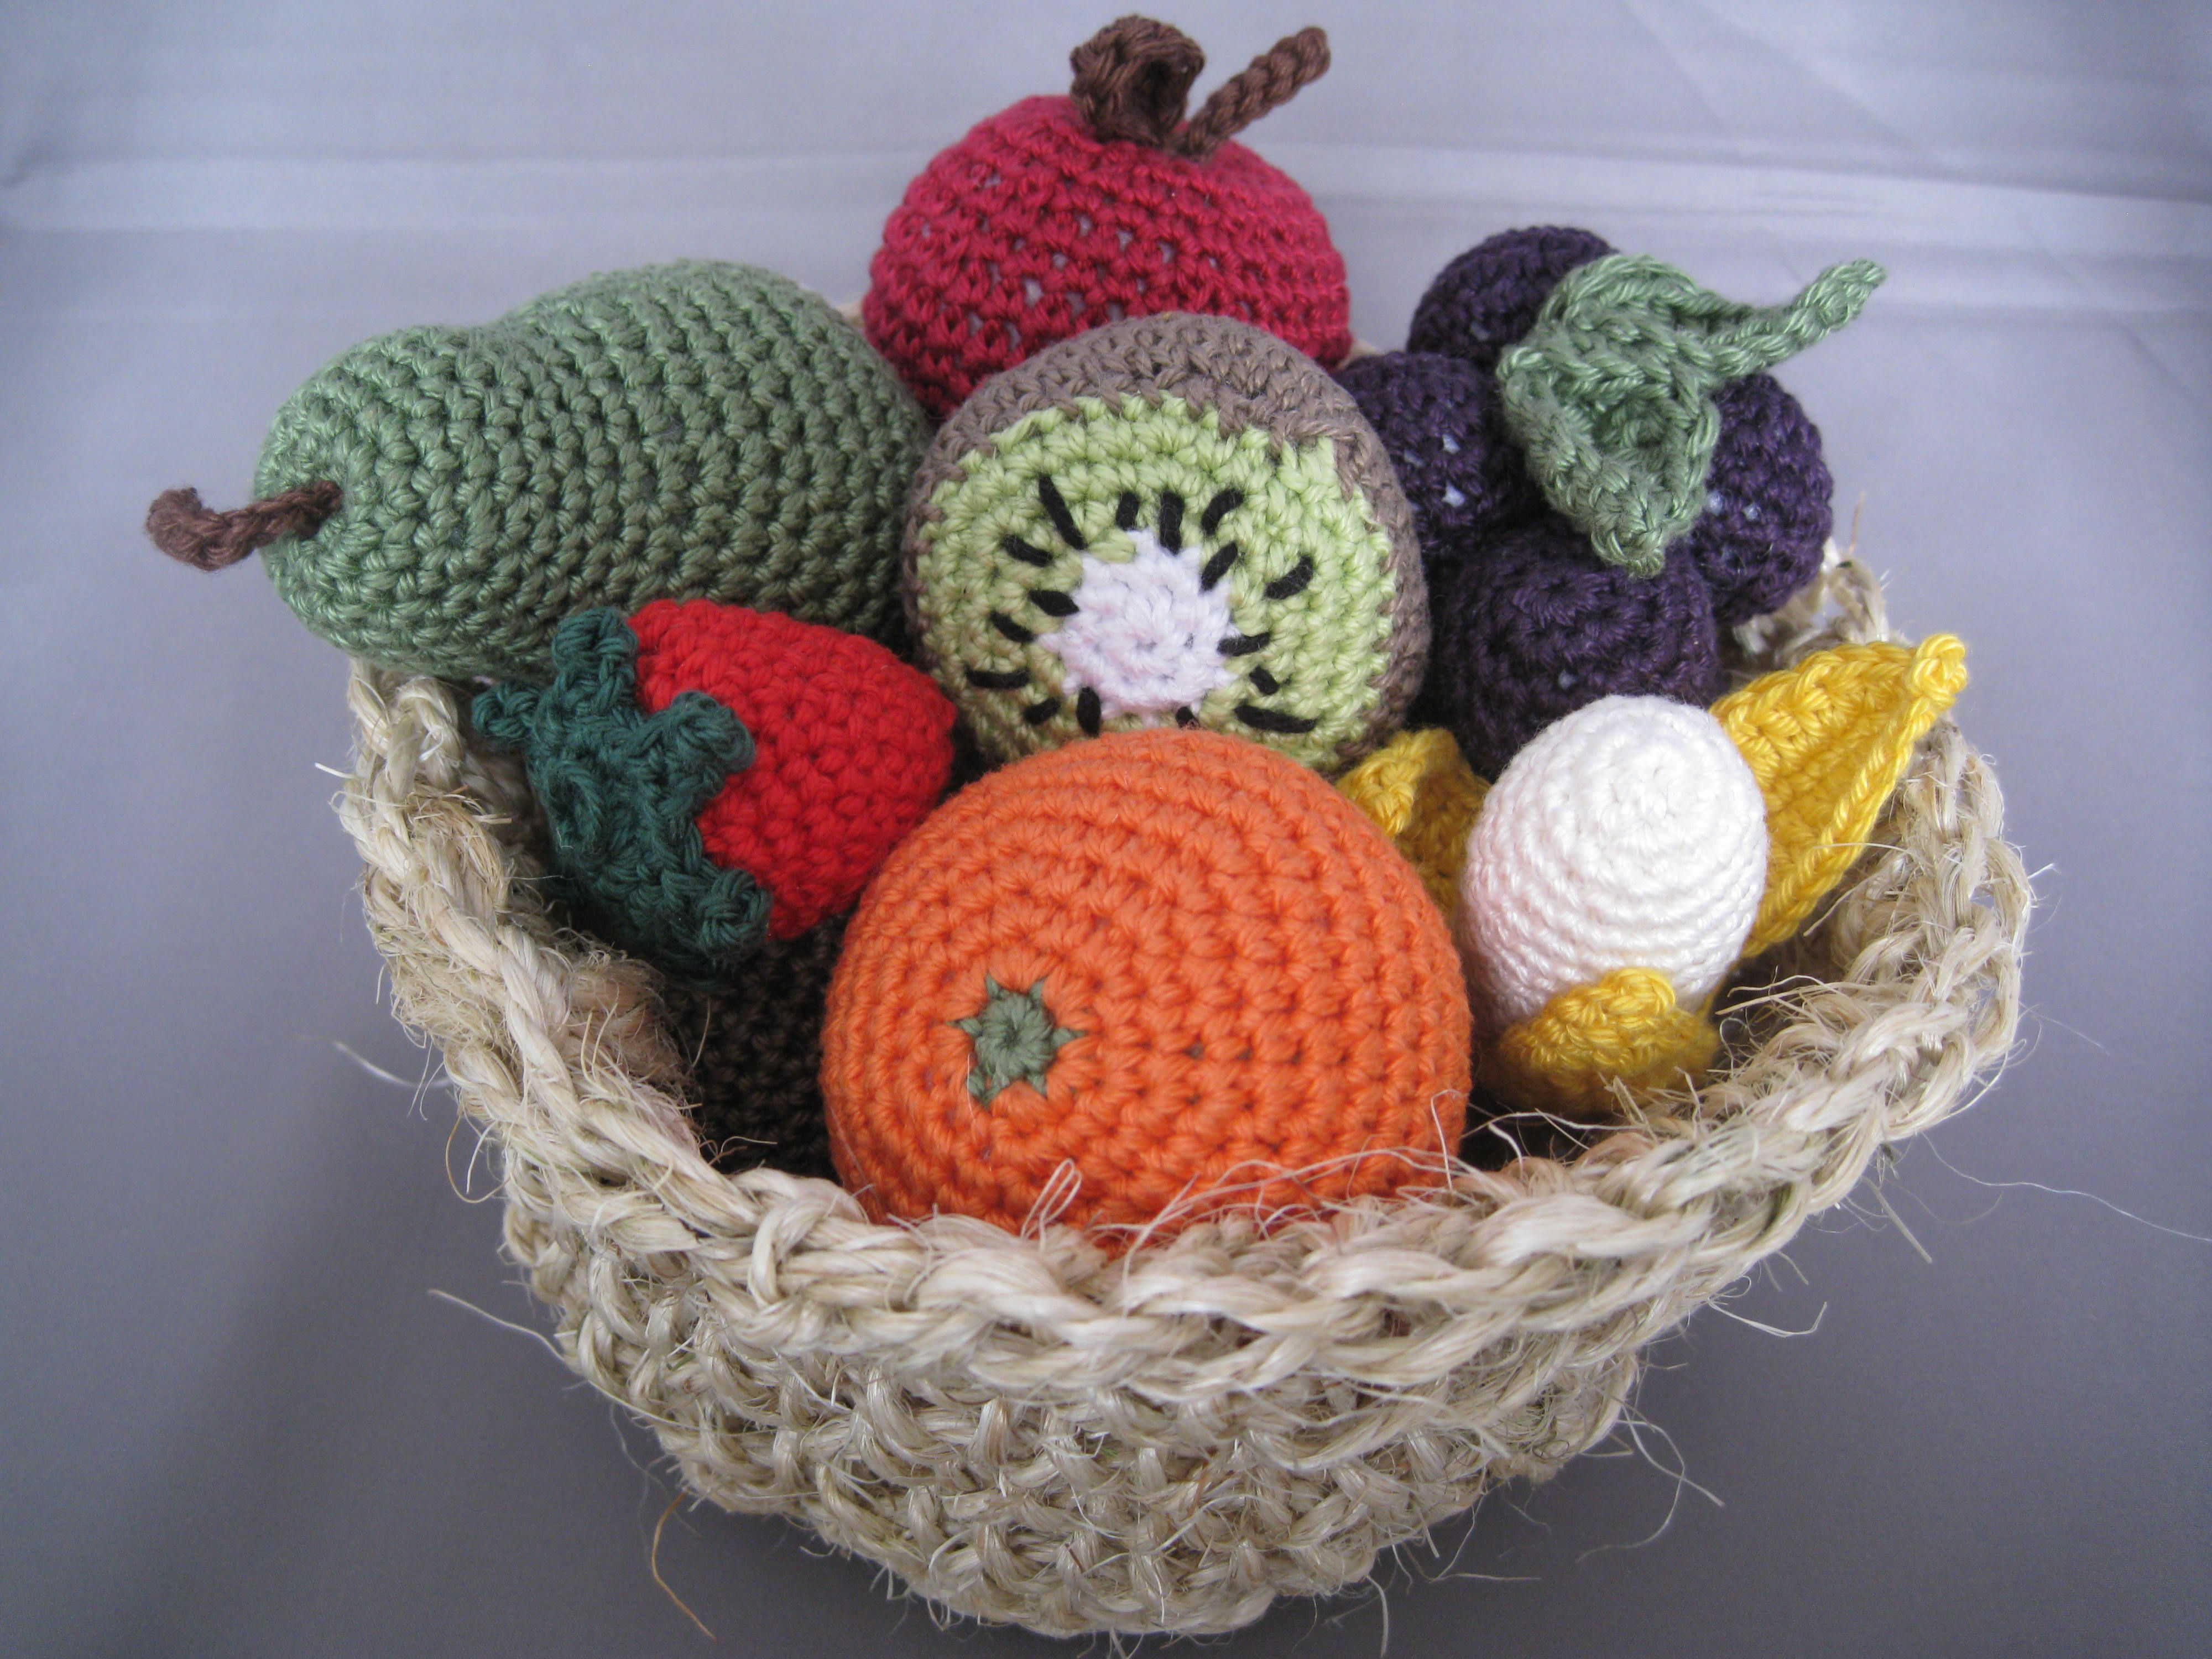 Crochet Fruit Basket Pattern Crochet Fruit Basket Crochet Food Pinterest